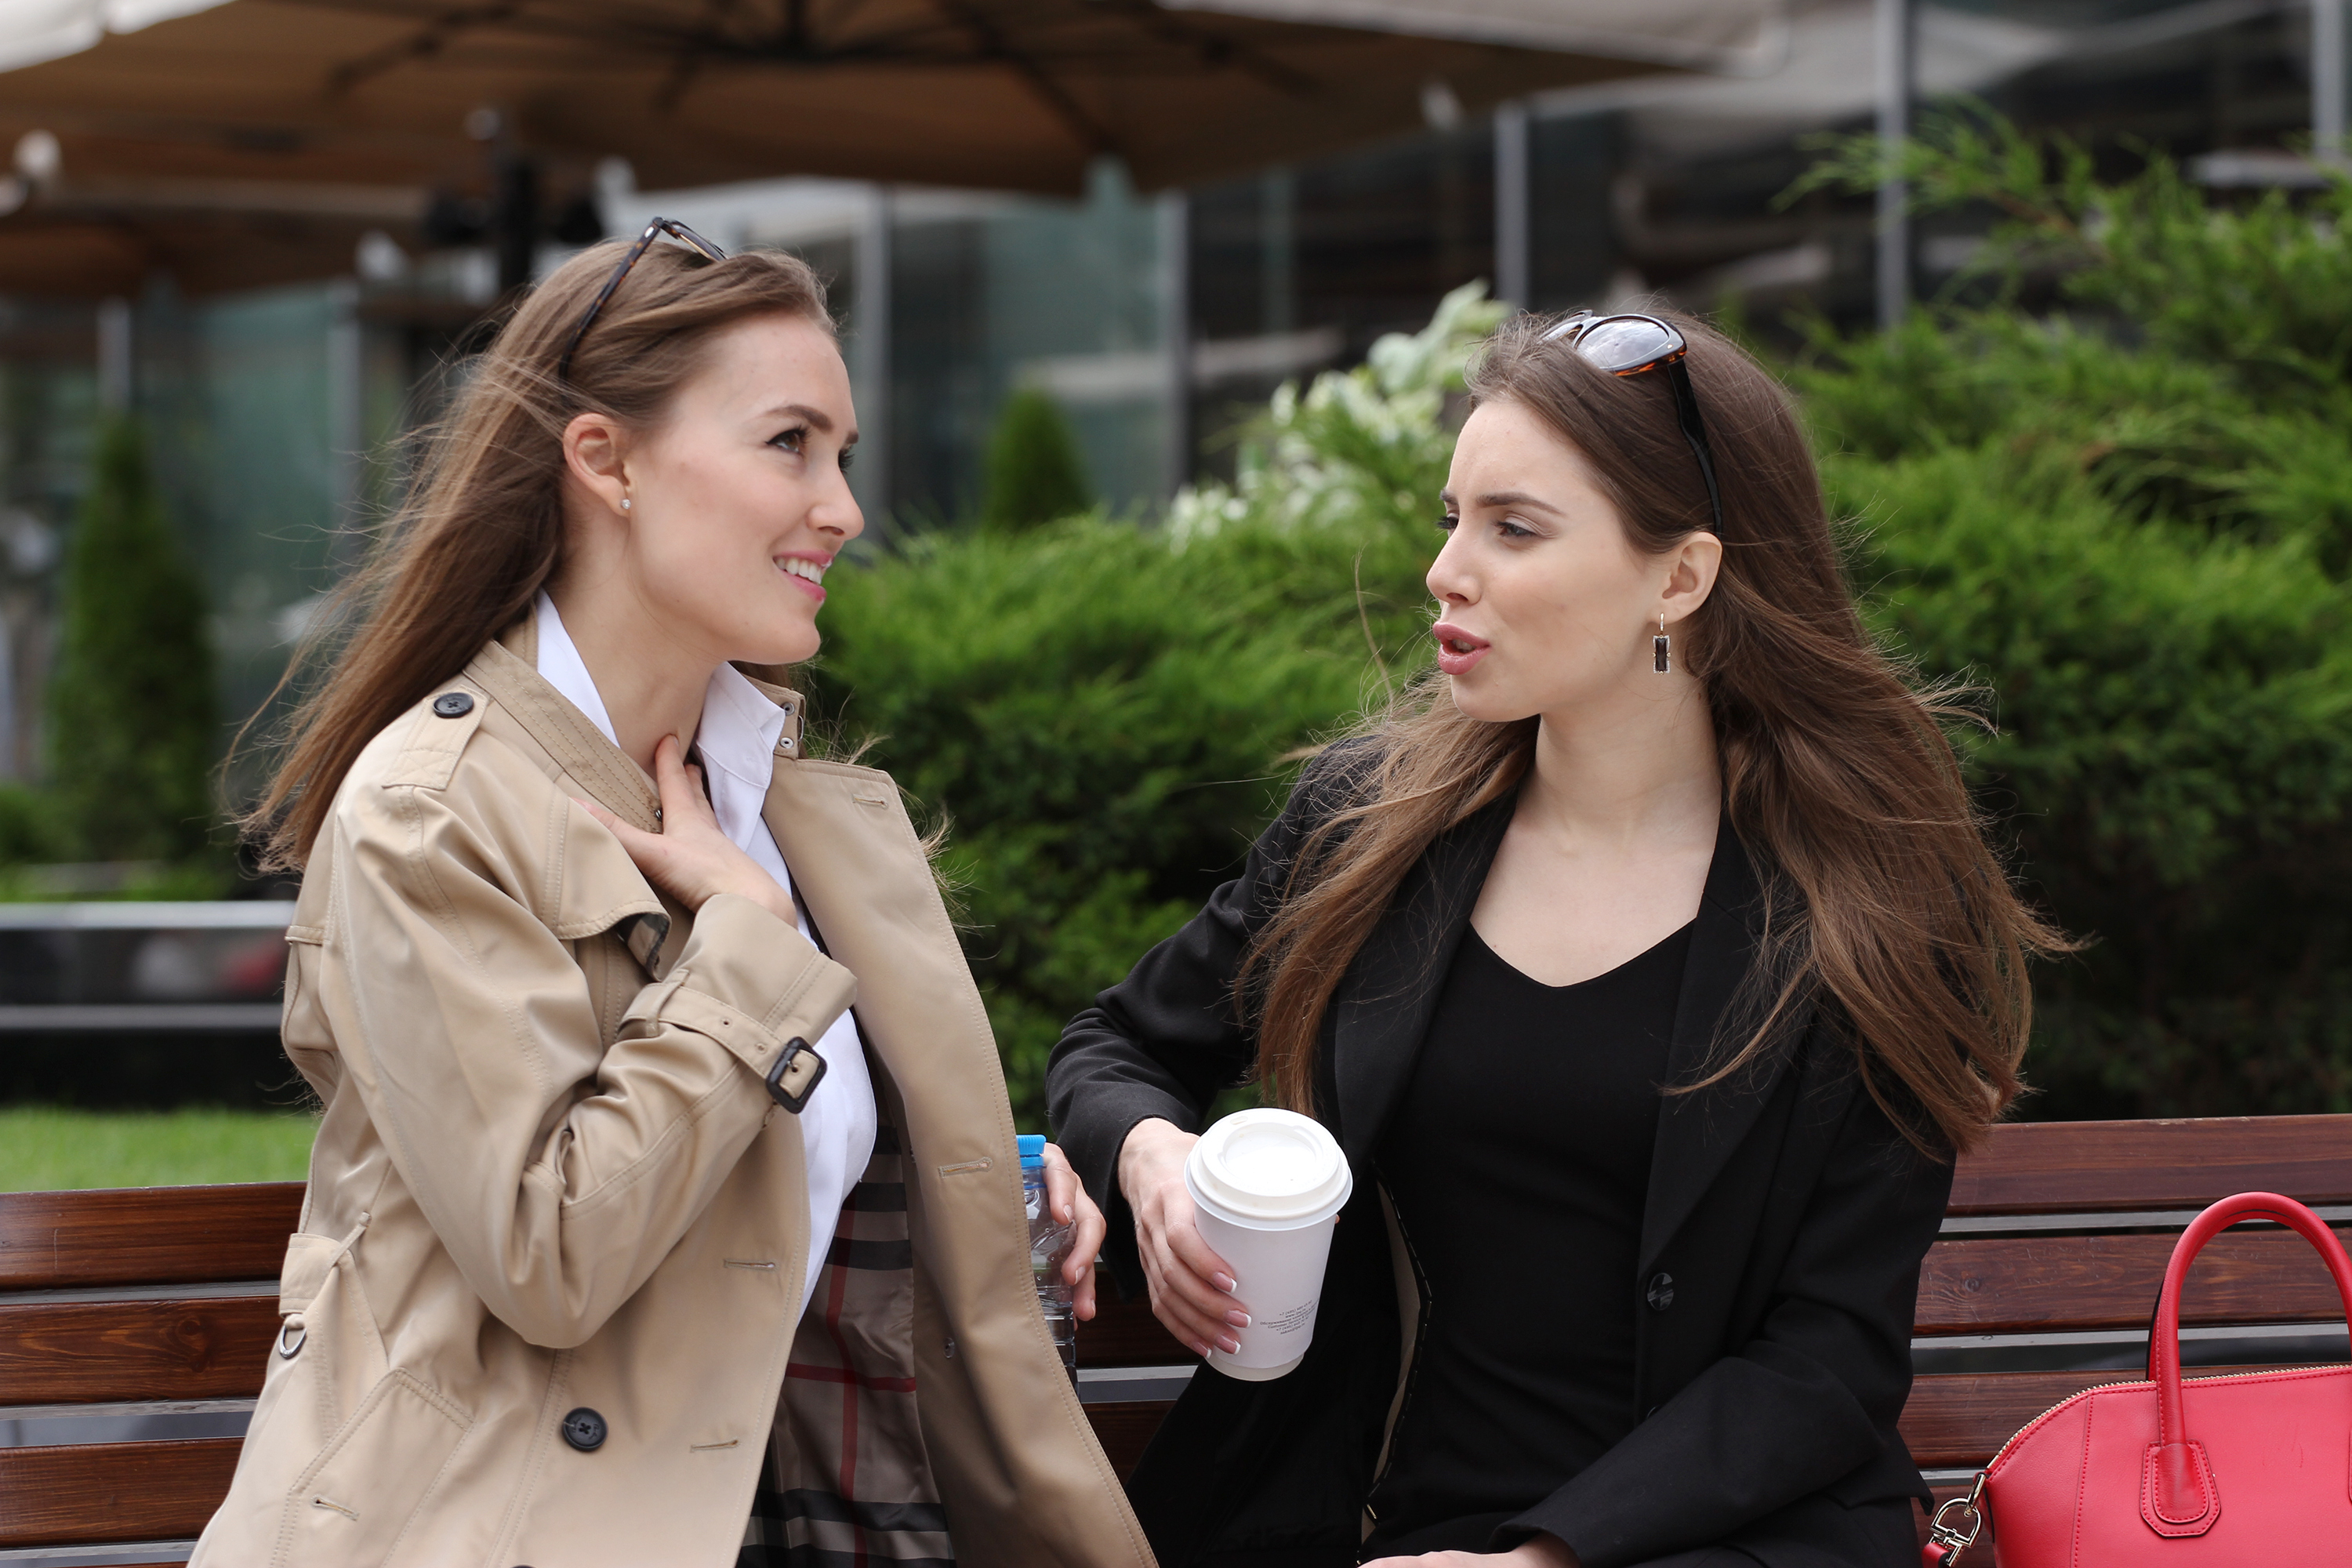 Dos chicas hablando | Fuente: Shutterstock